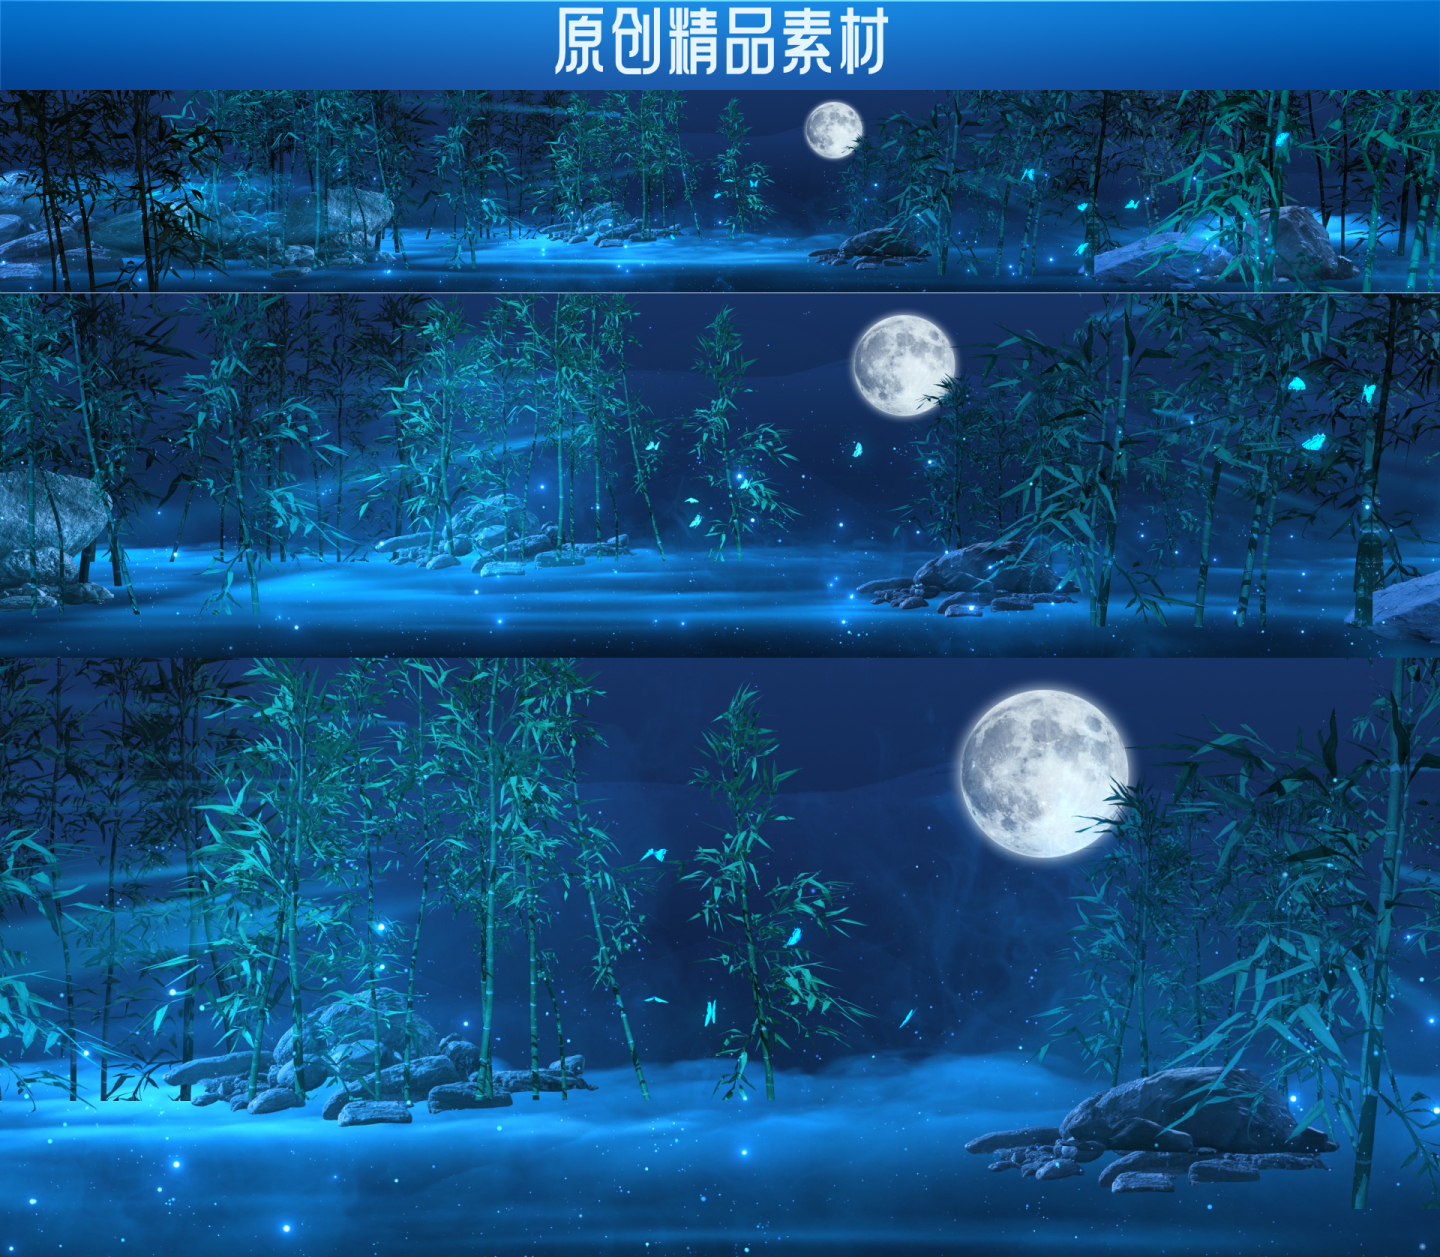 中国风 竹林 LED大屏背景视频素材4